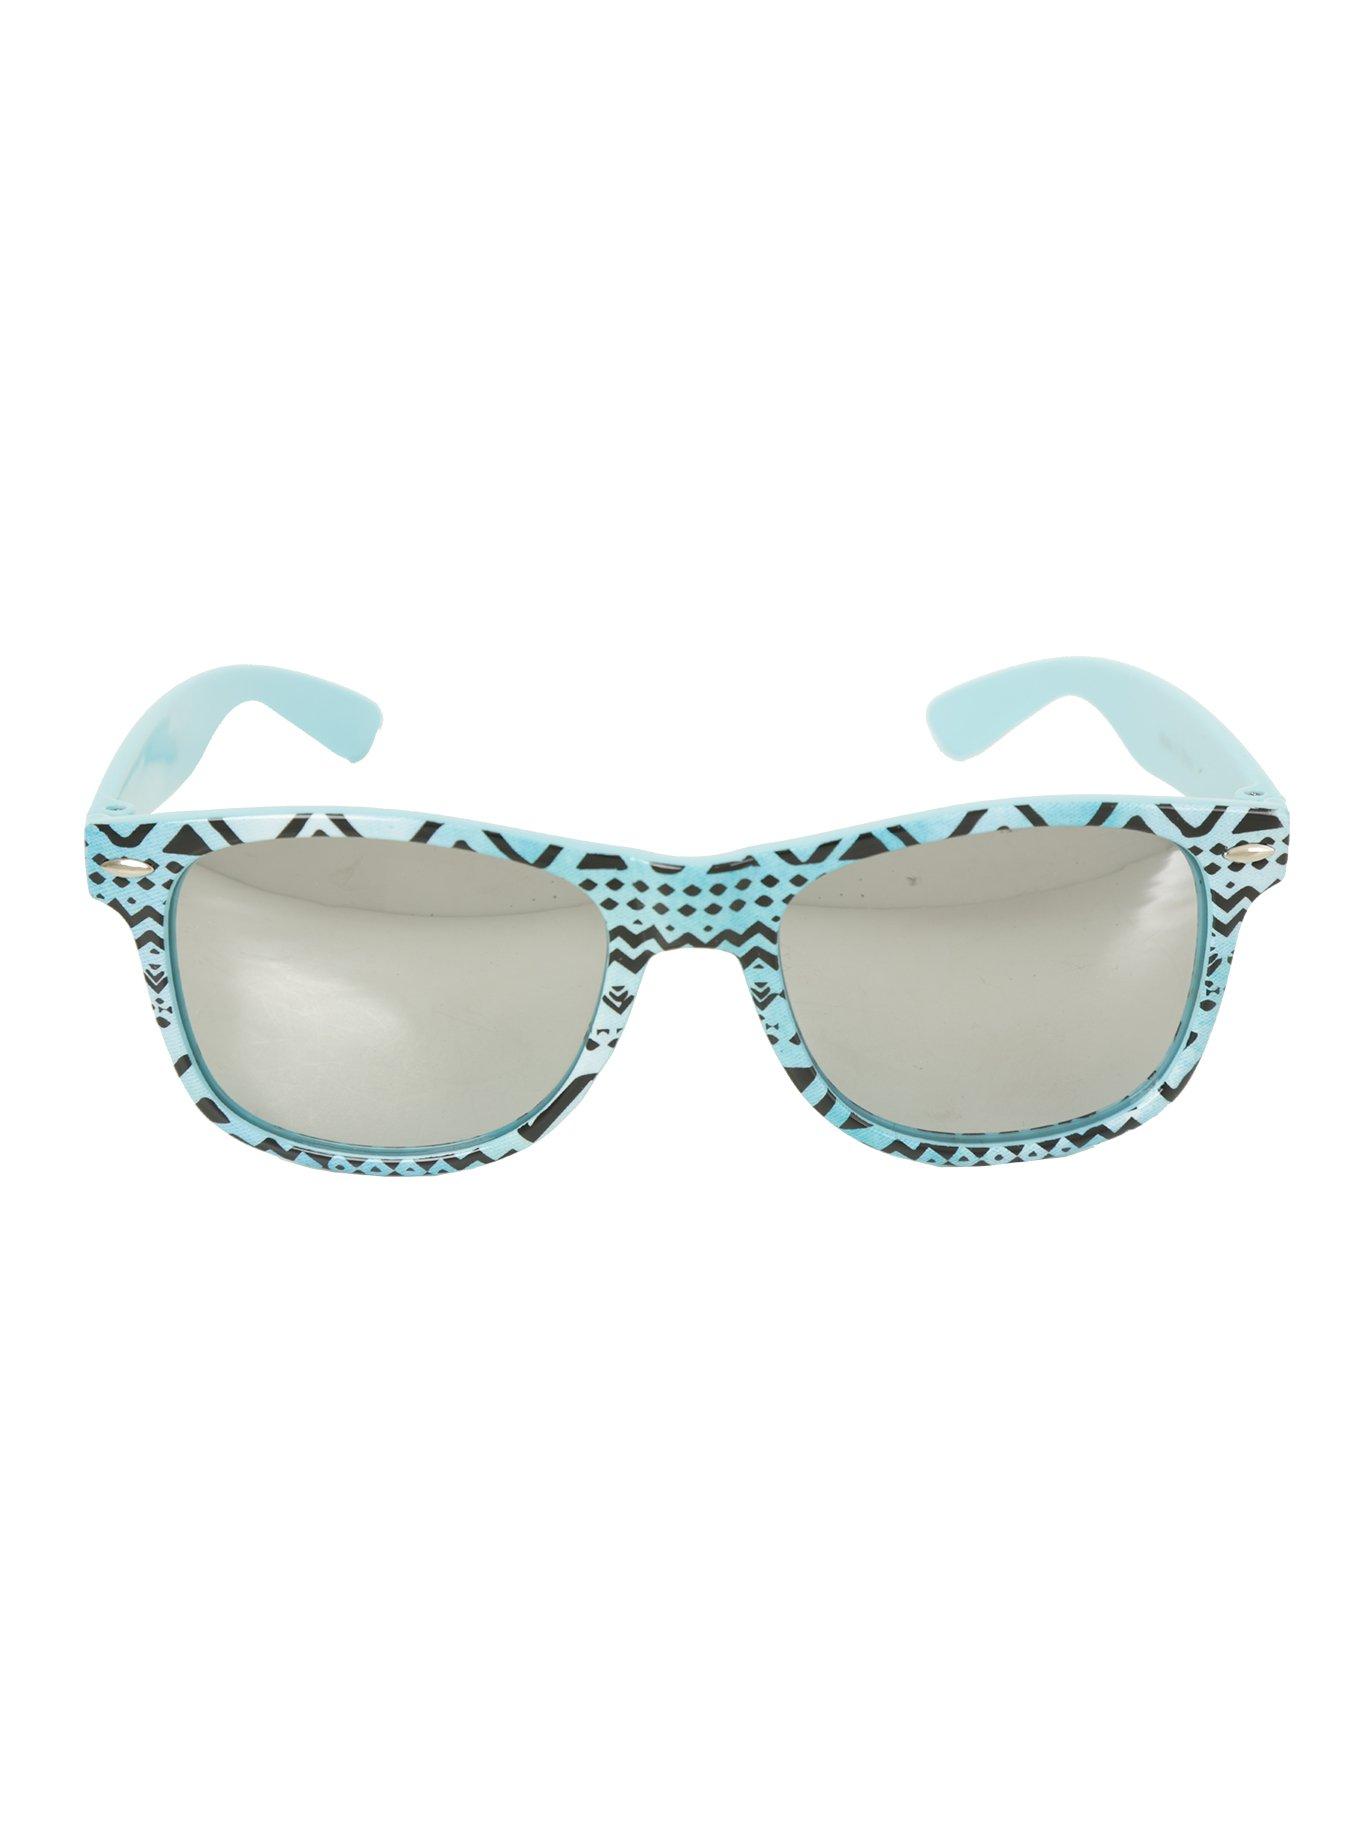 Turquoise Geometric Retro Sunglasses, , alternate